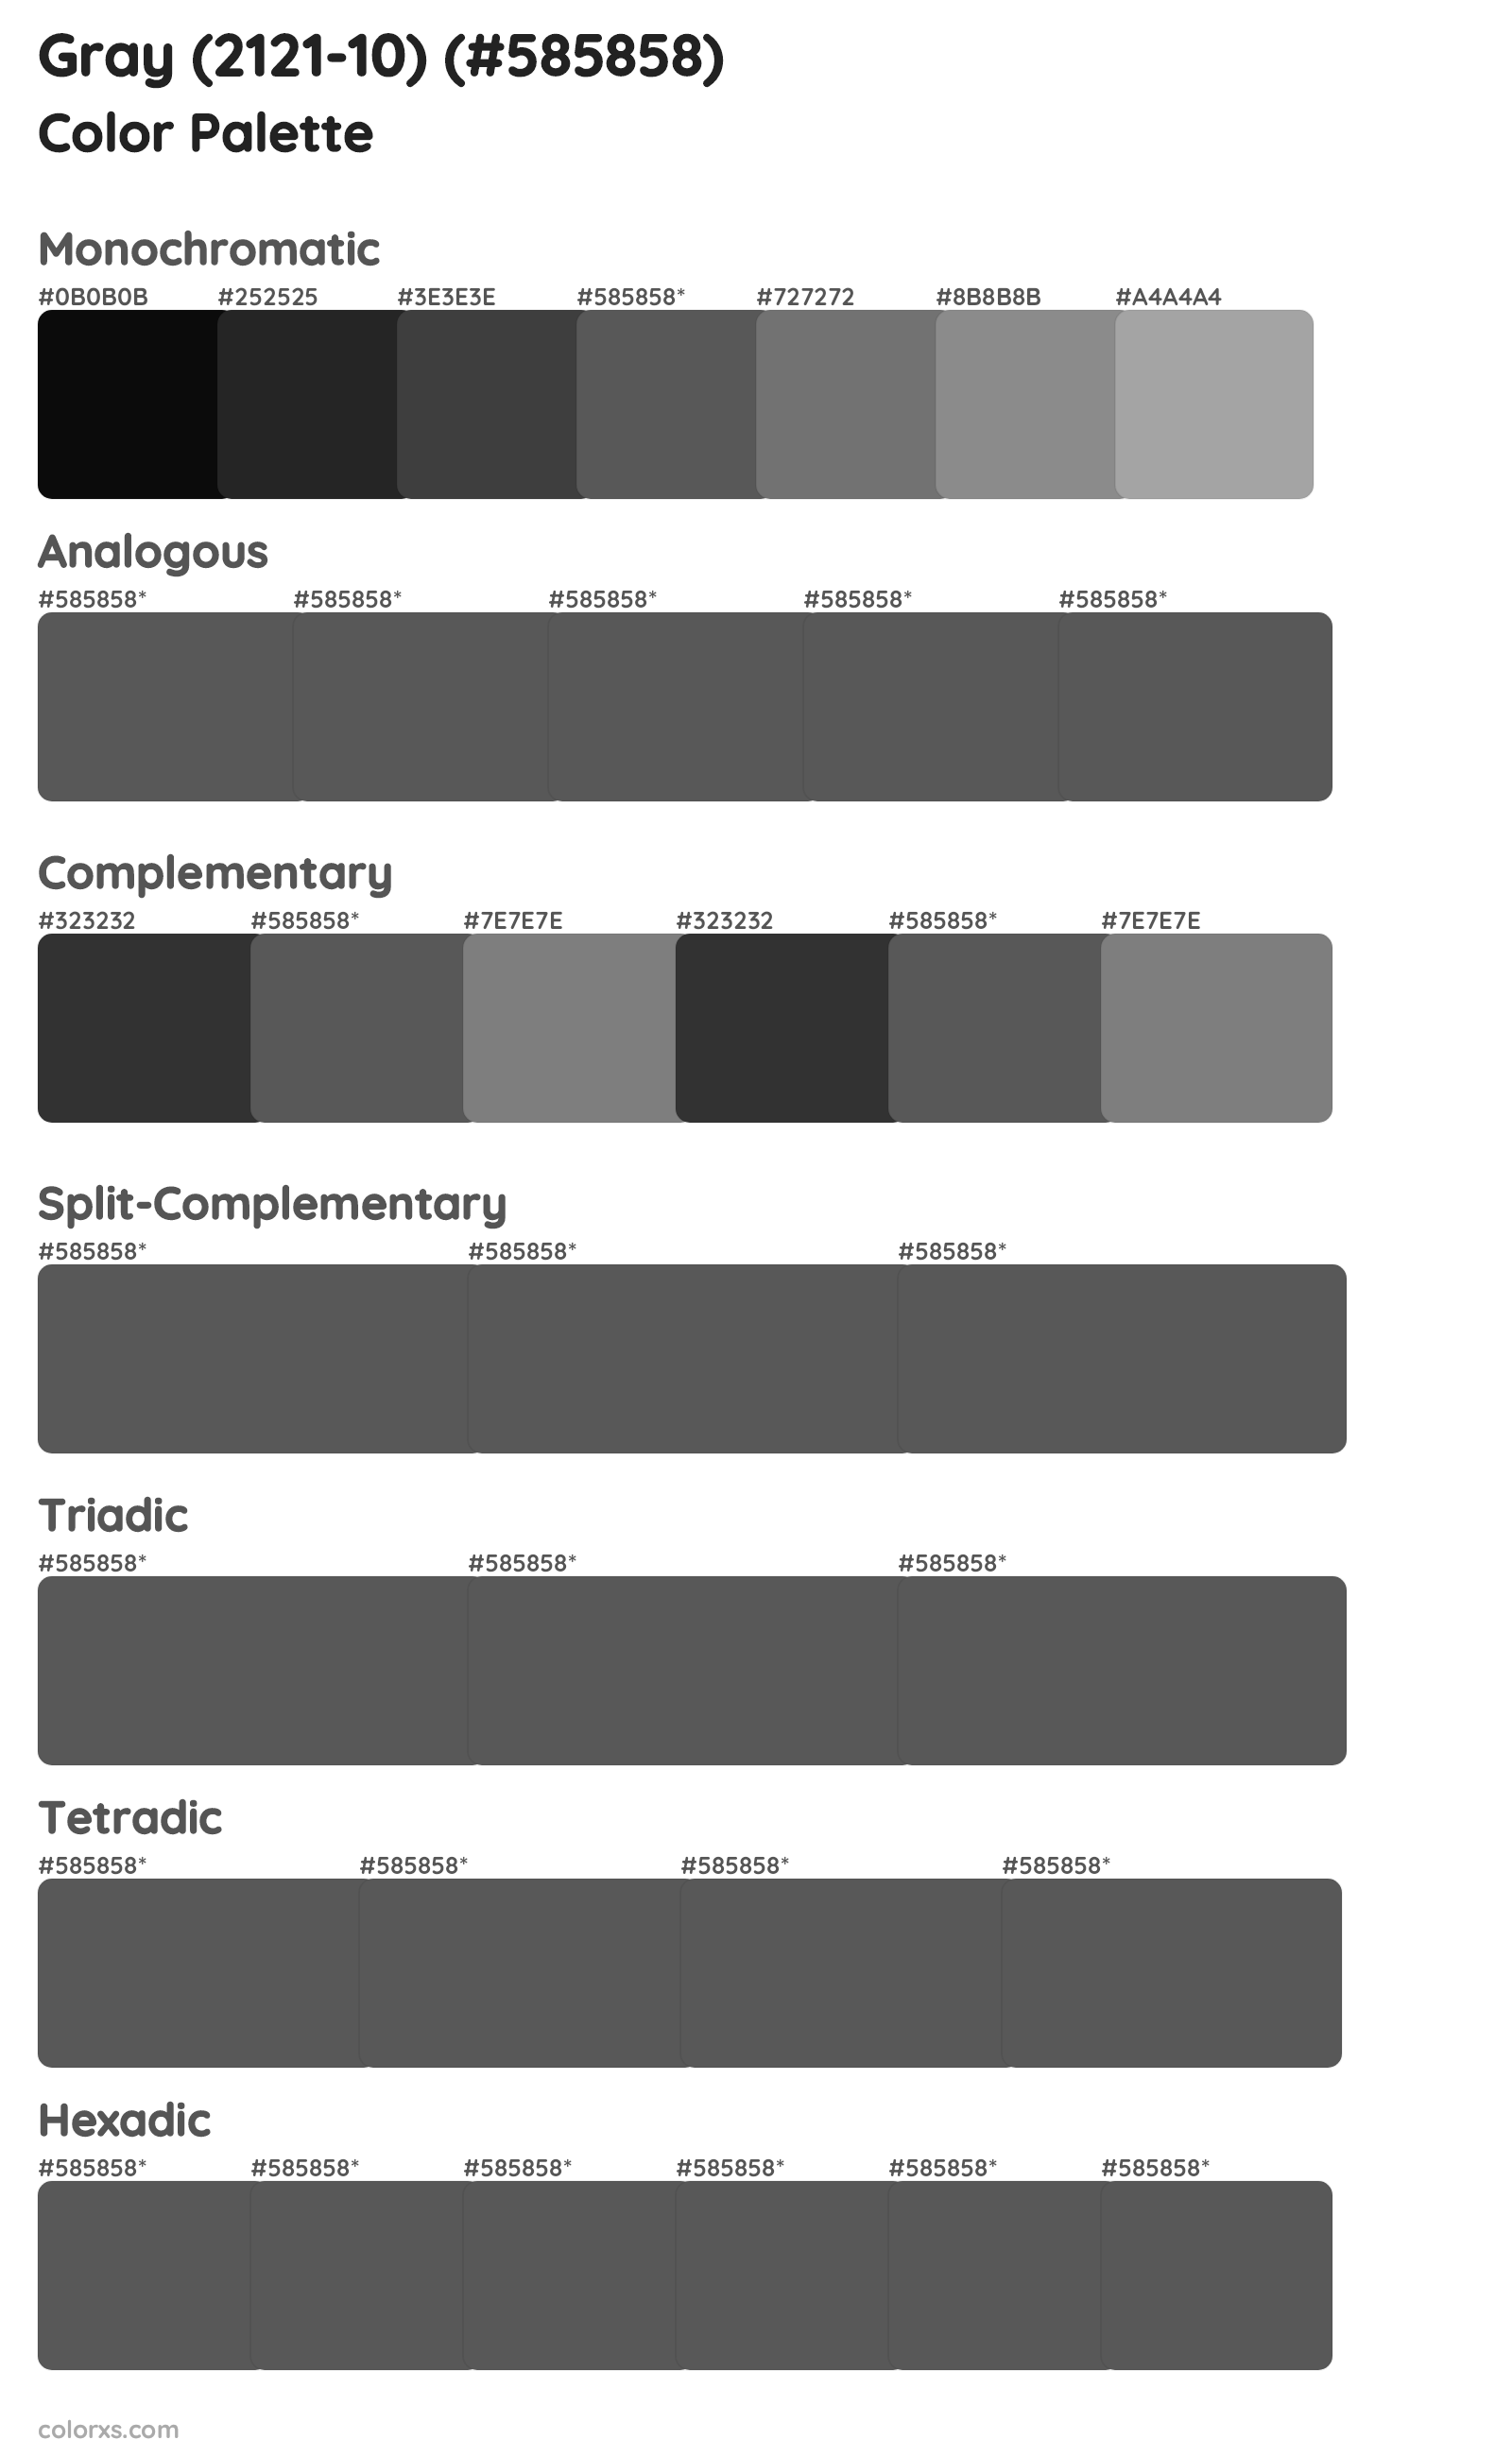 Gray (2121-10) Color Scheme Palettes